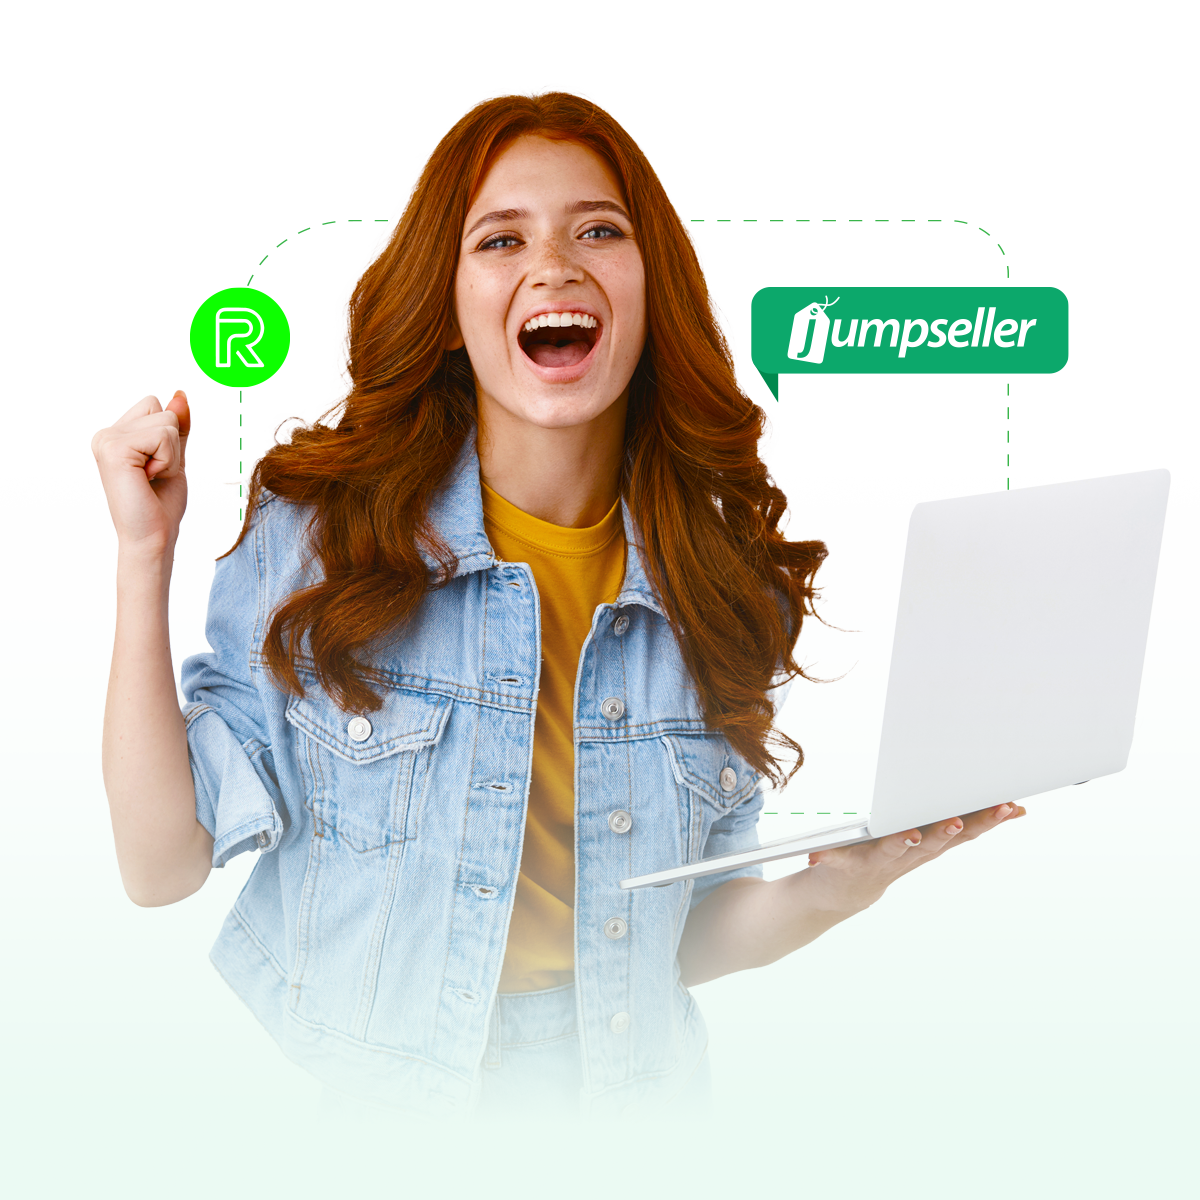 Mujer emprendedora sonriendo trabajando en su notebook. En la imagen se sobreimprime el logo de JumpSeller y el isotipo de ReciboPagos.